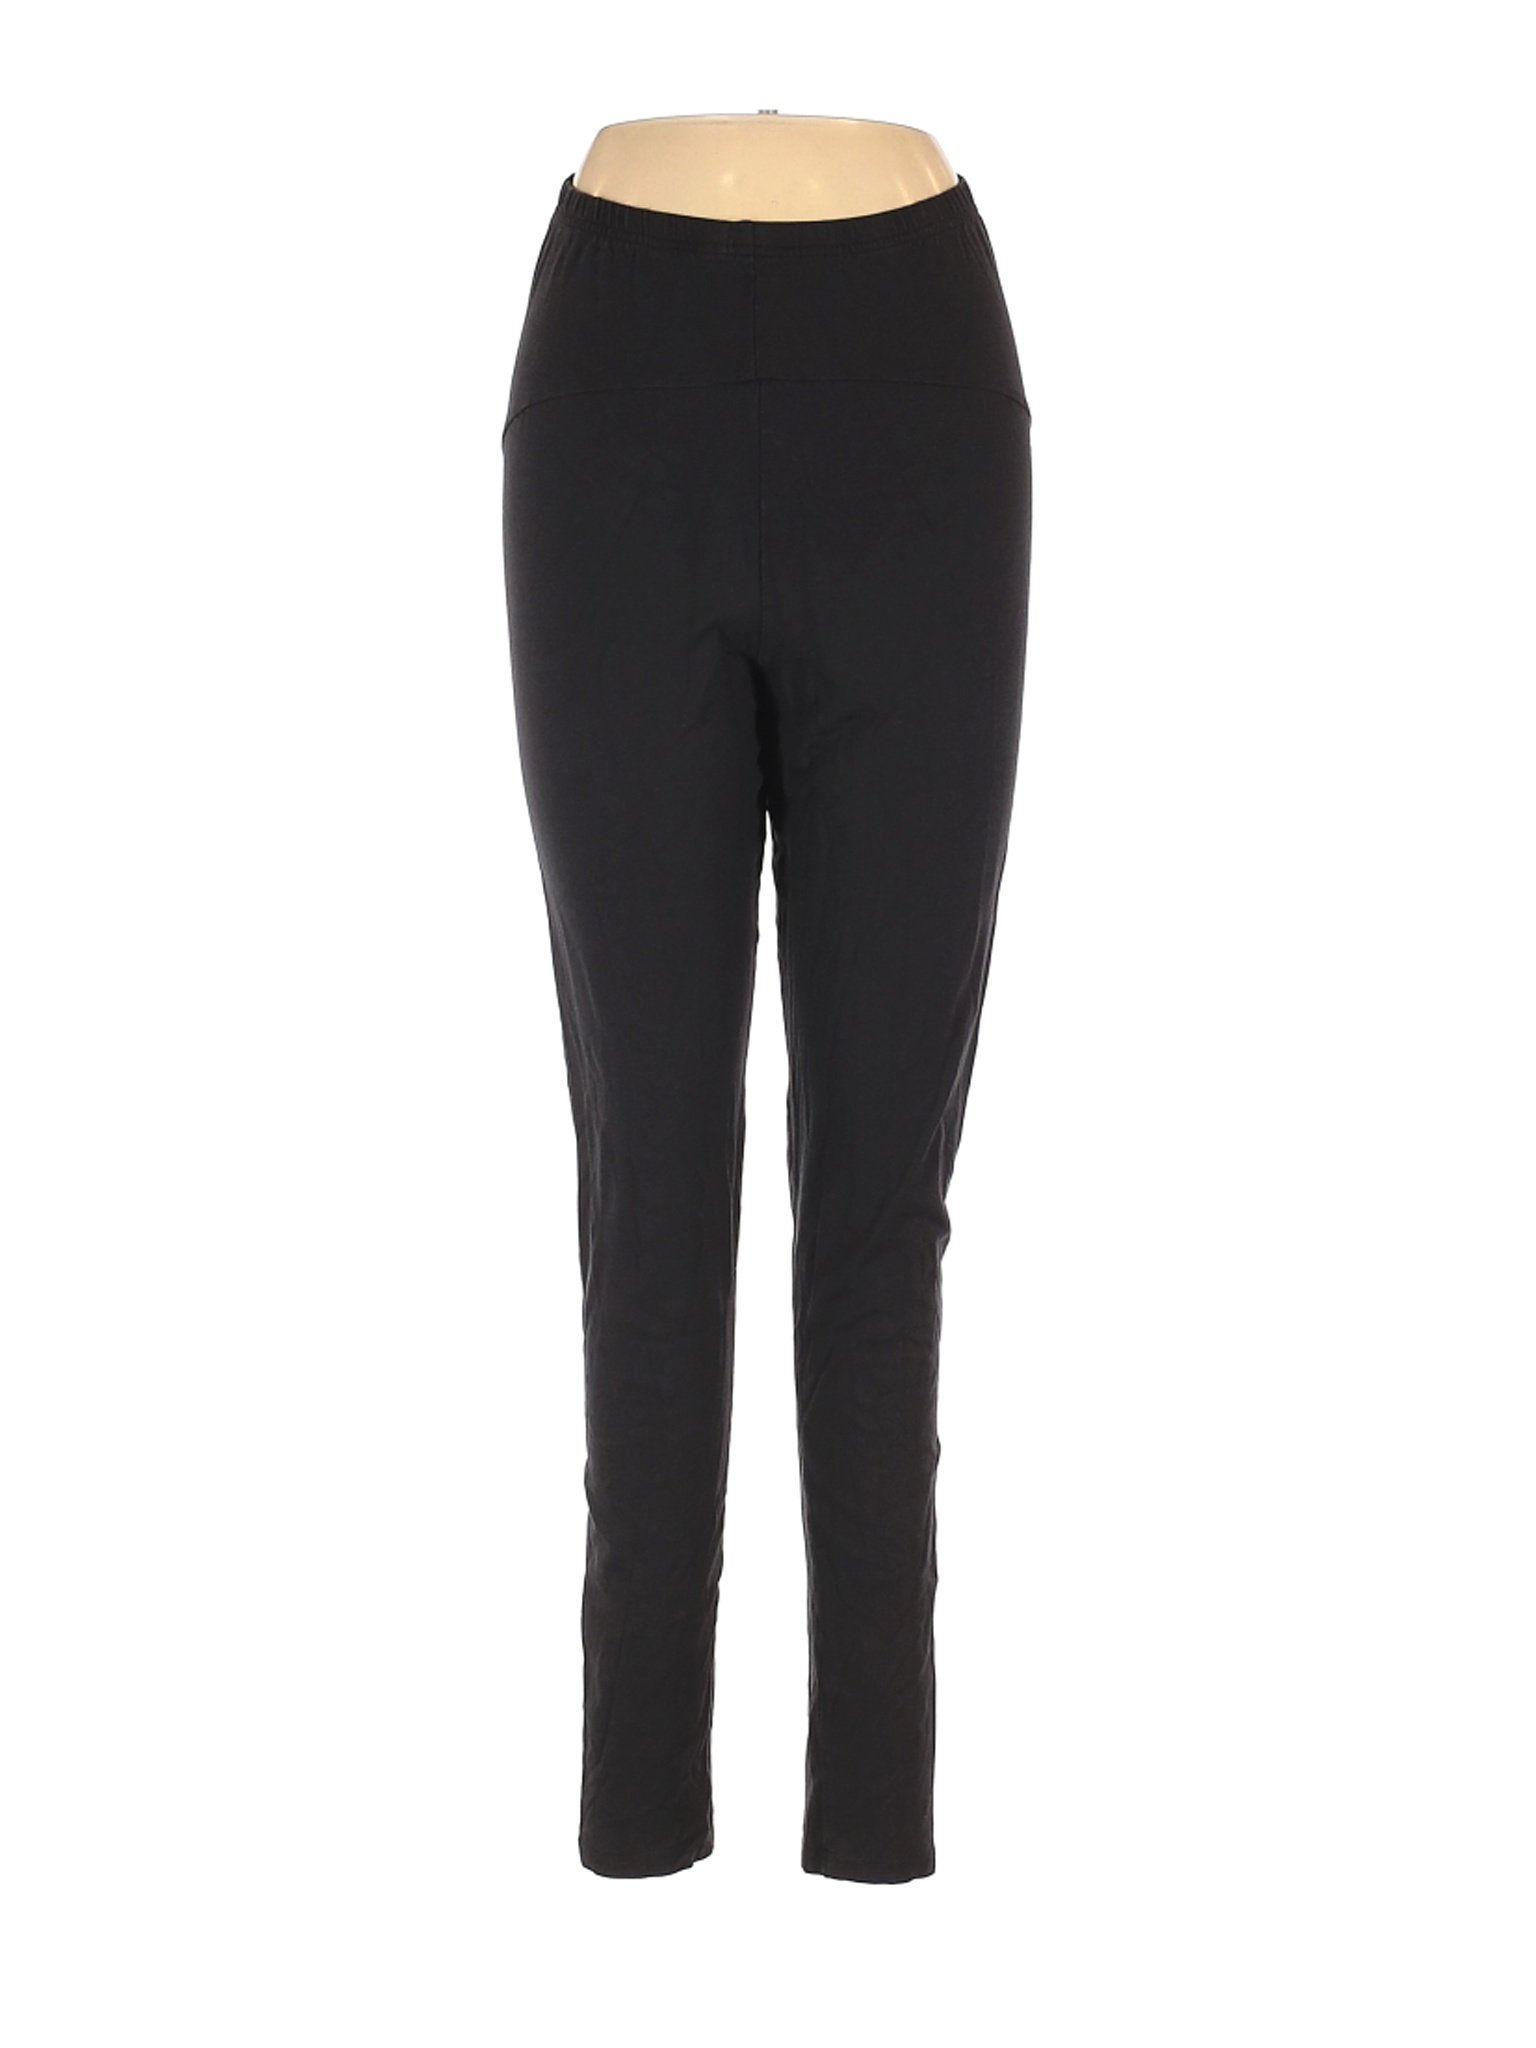 Serra Women Black Casual Pants S | eBay